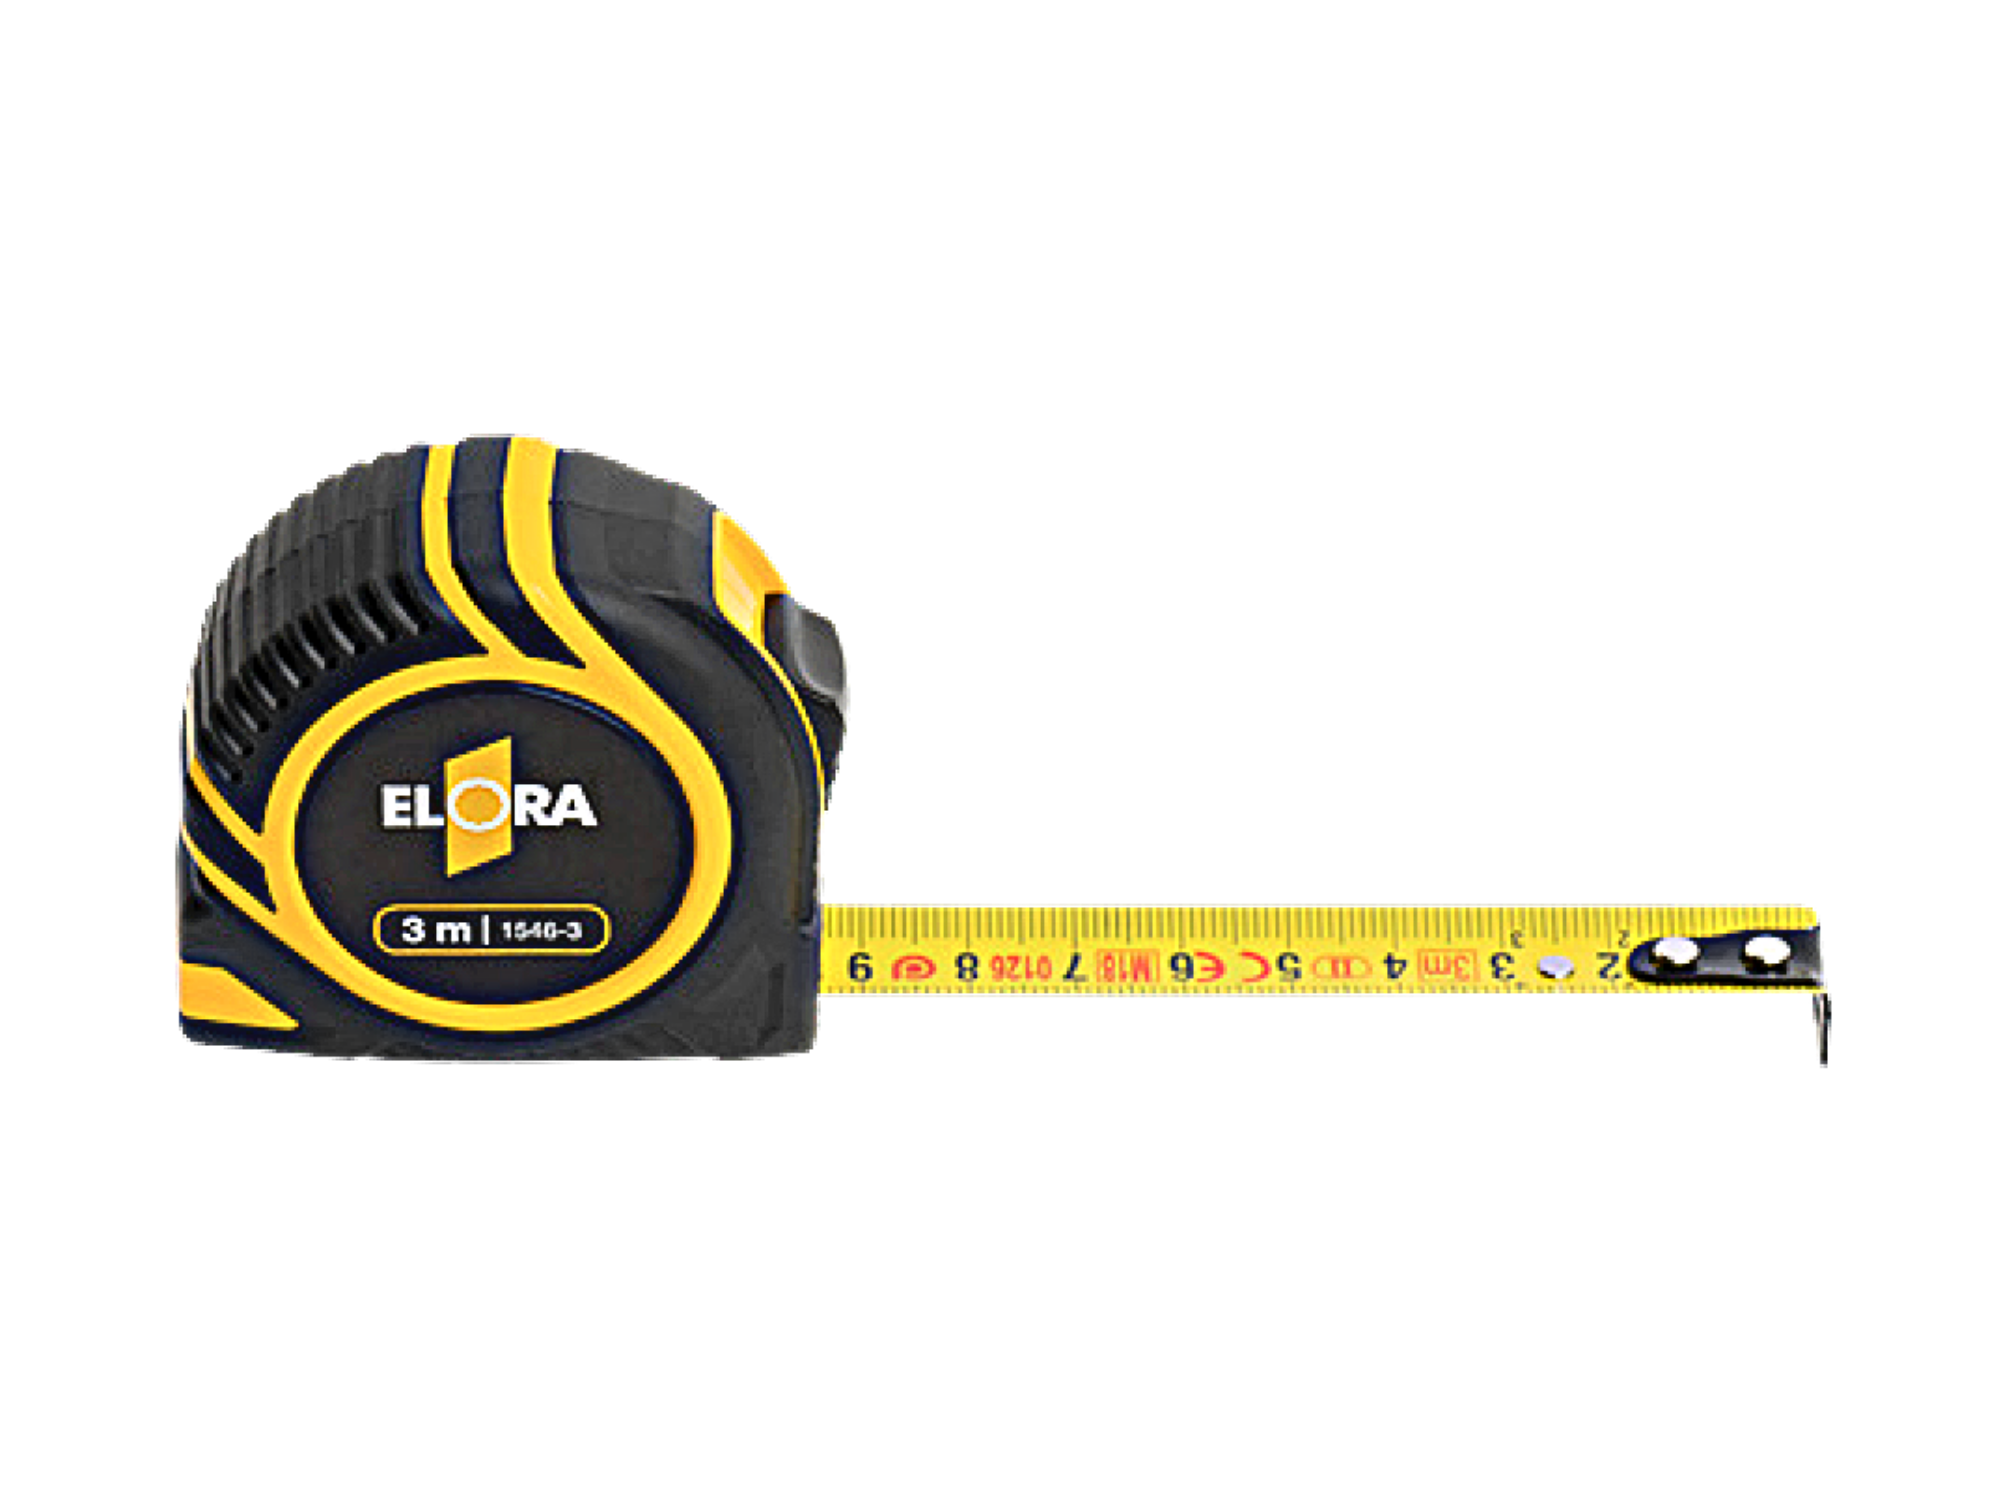 ELORA 1546 Measuring Tape (ELORA Tools) - Premium Measuring Tape from ELORA - Shop now at Yew Aik.